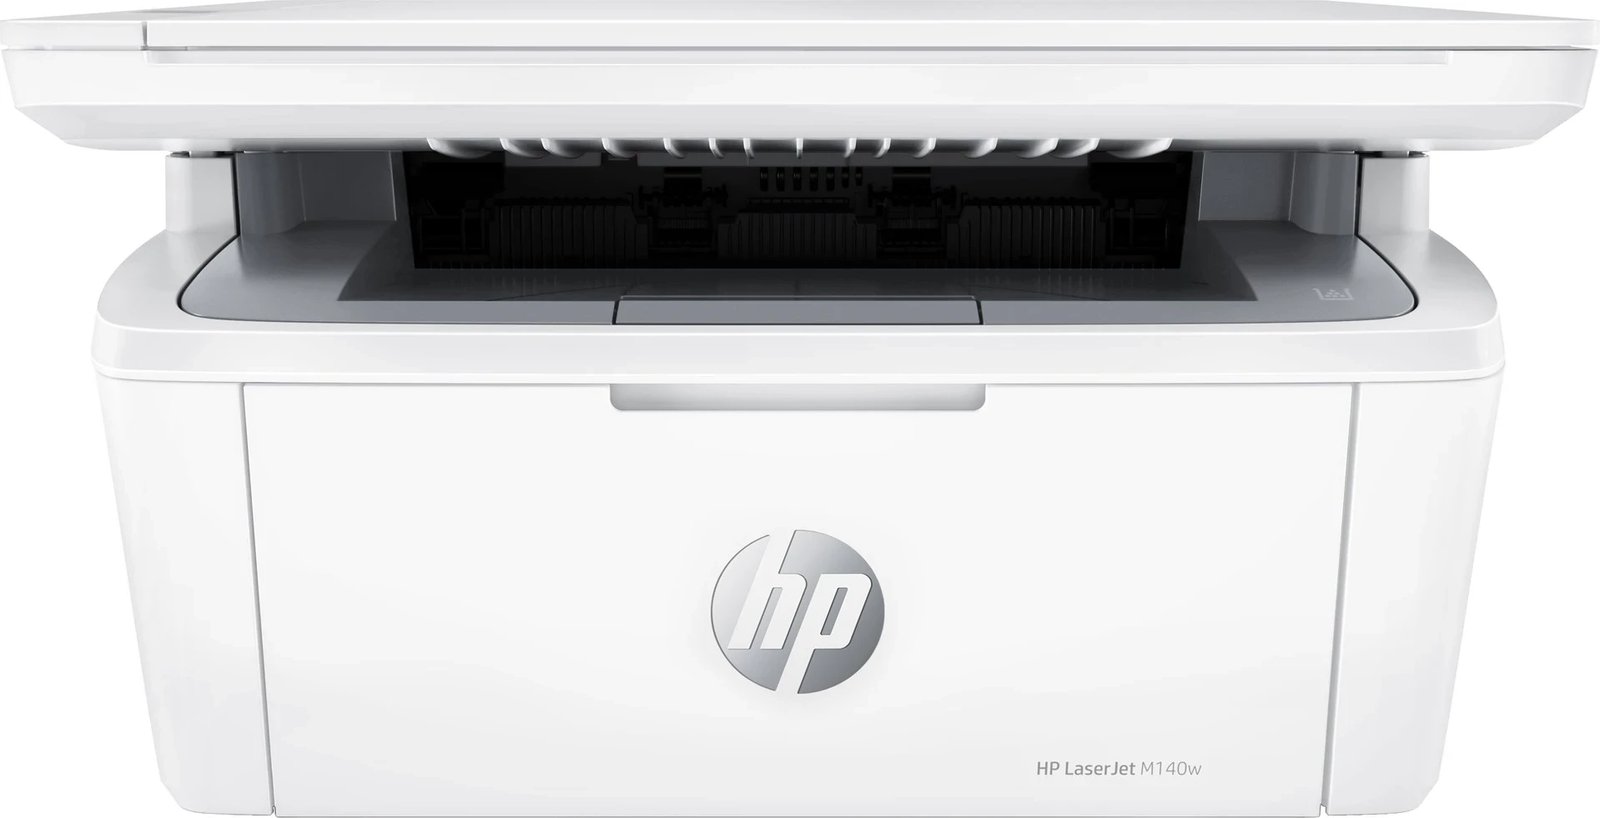 Printer HP LaserJet MFP M140w, i bardhë e zi